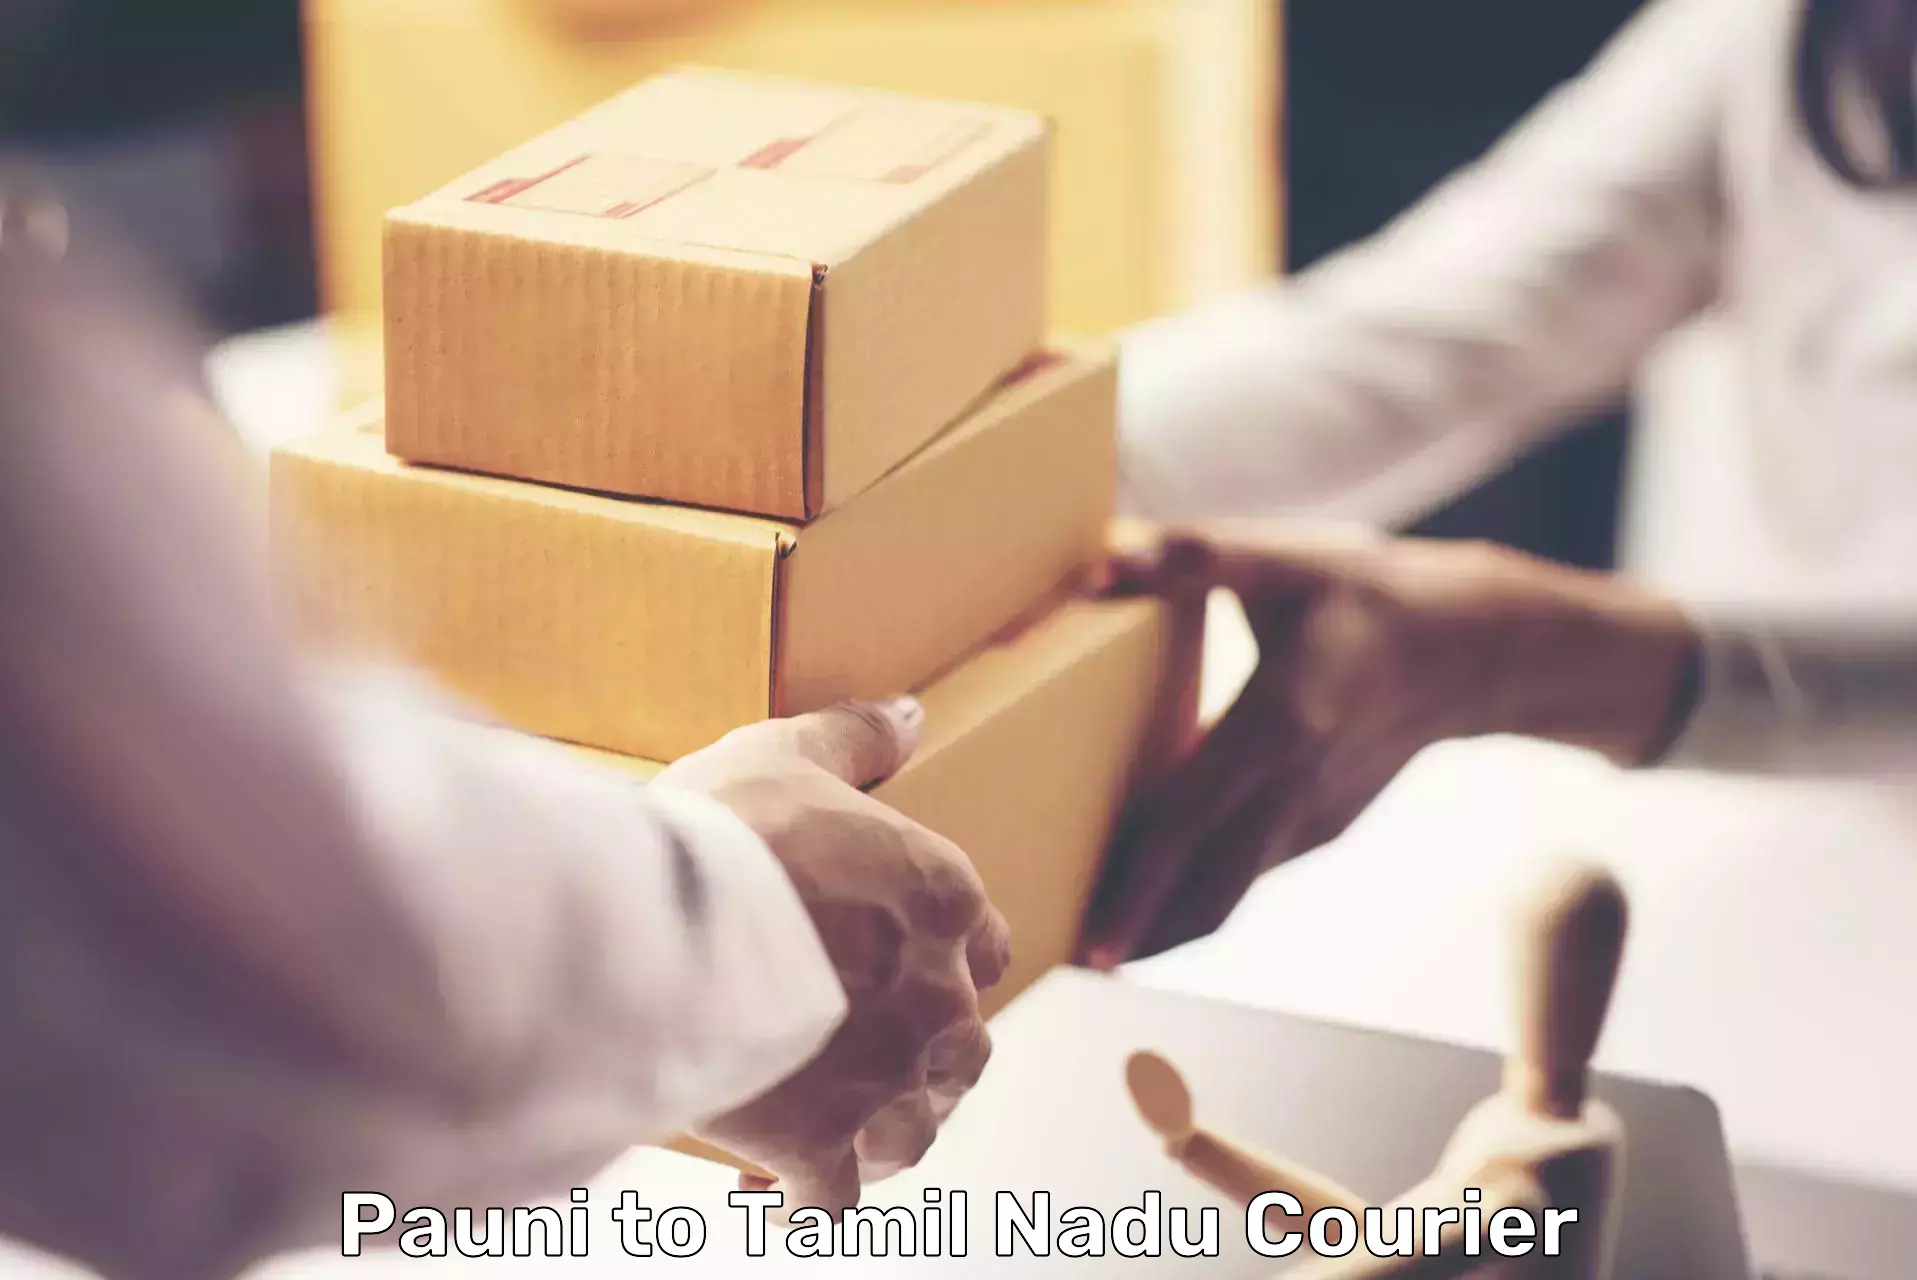 Efficient parcel service Pauni to Cuddalore